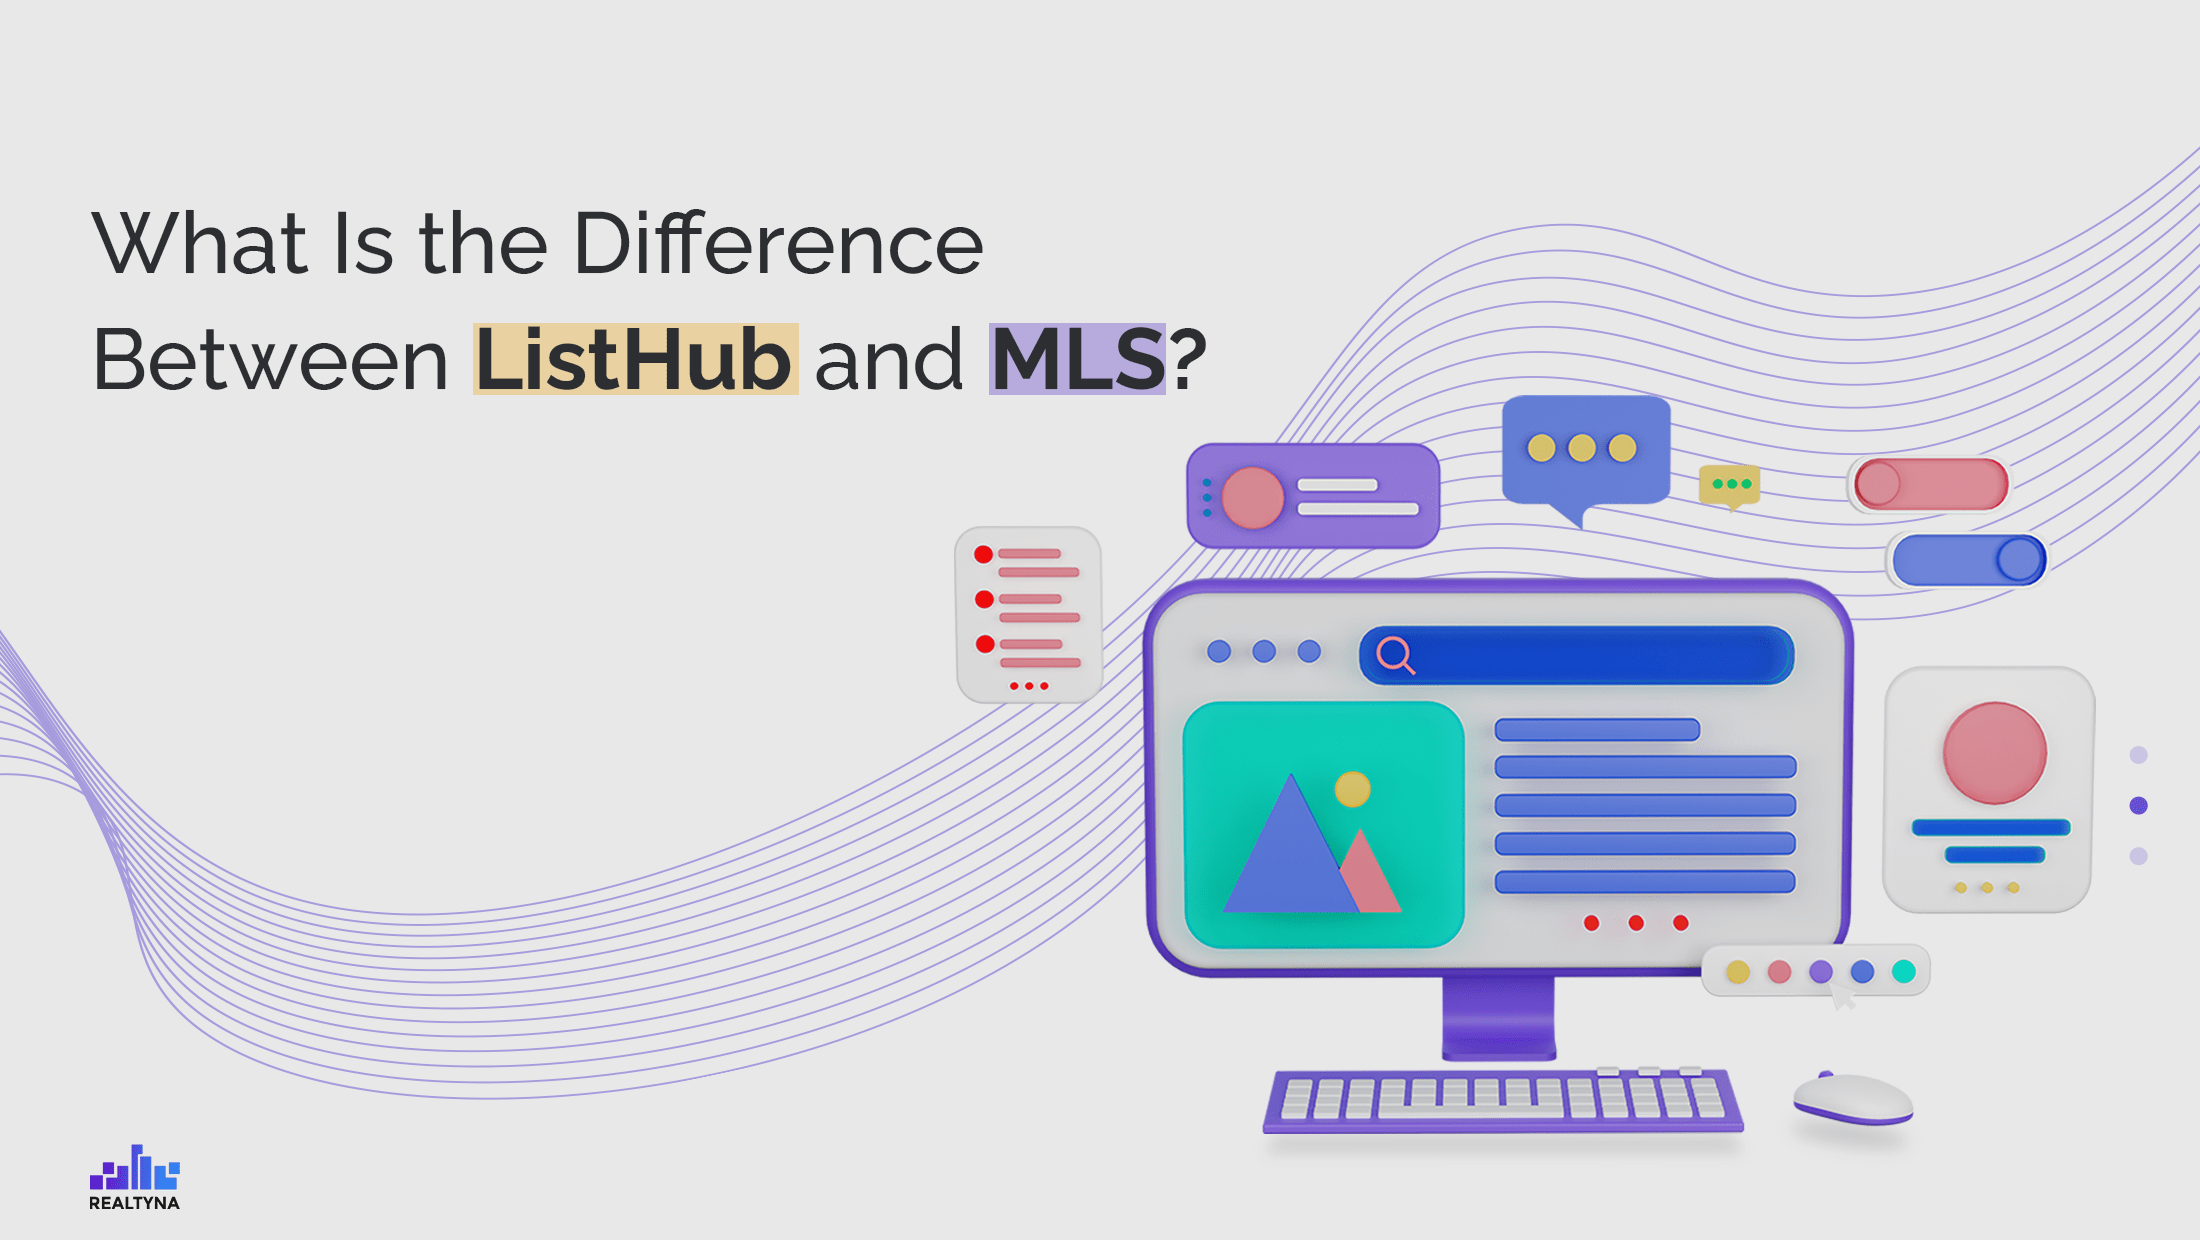 ListHub and MLS